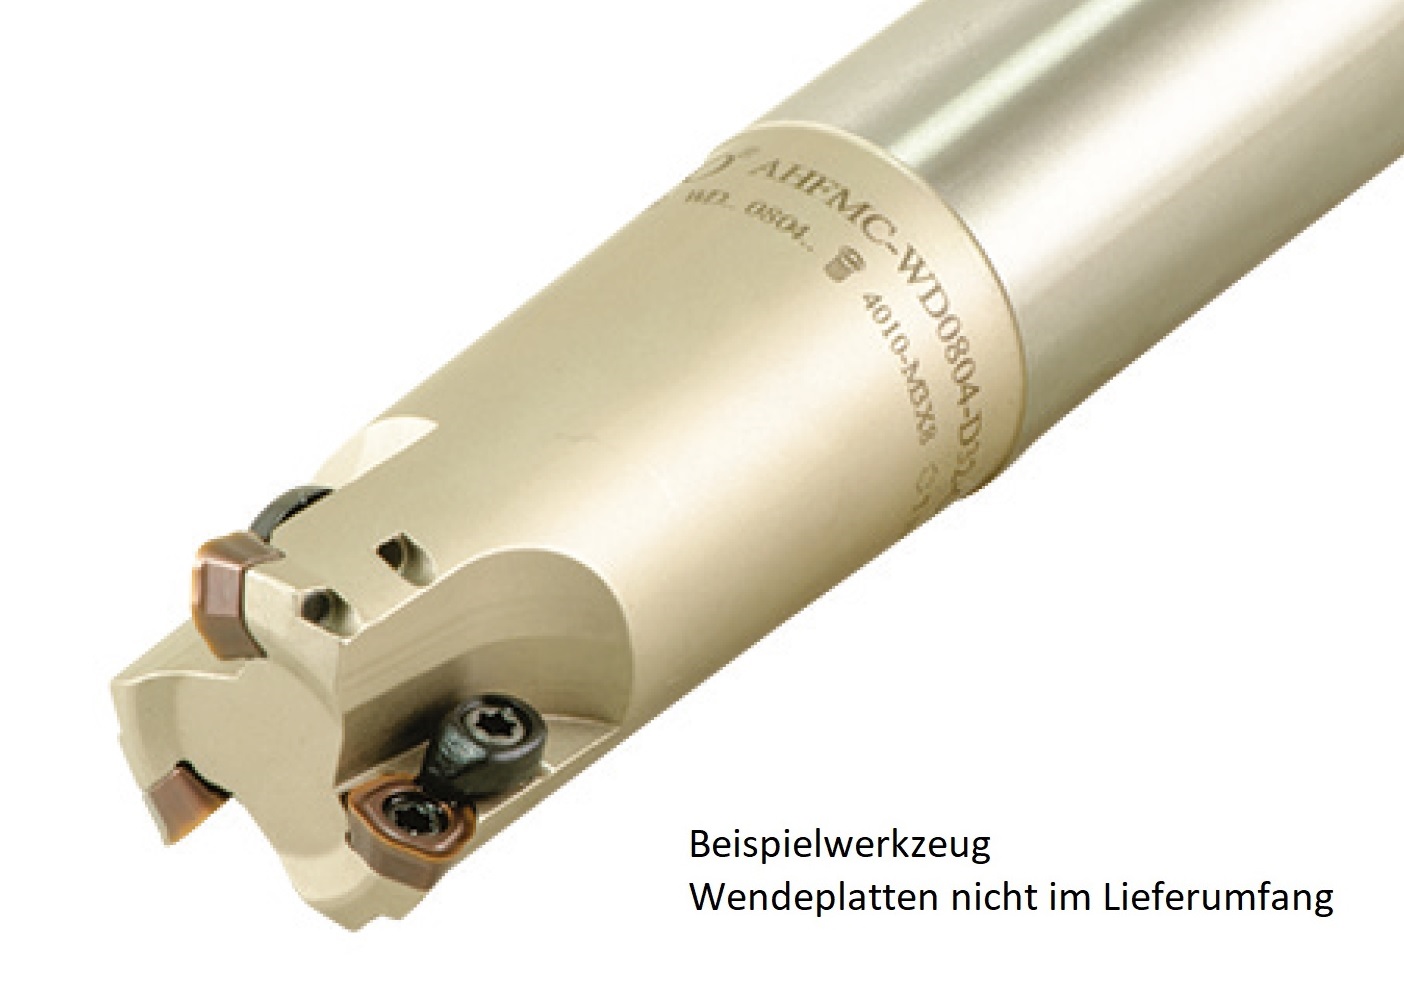 AKKO-Hochvorschub-Schaftfräser ø 32 mm für Wendeplatten, kompatibel mit Sumitomo WDMT 1205....
Schaft-ø 32, ohne Innenkühlung, Z=2